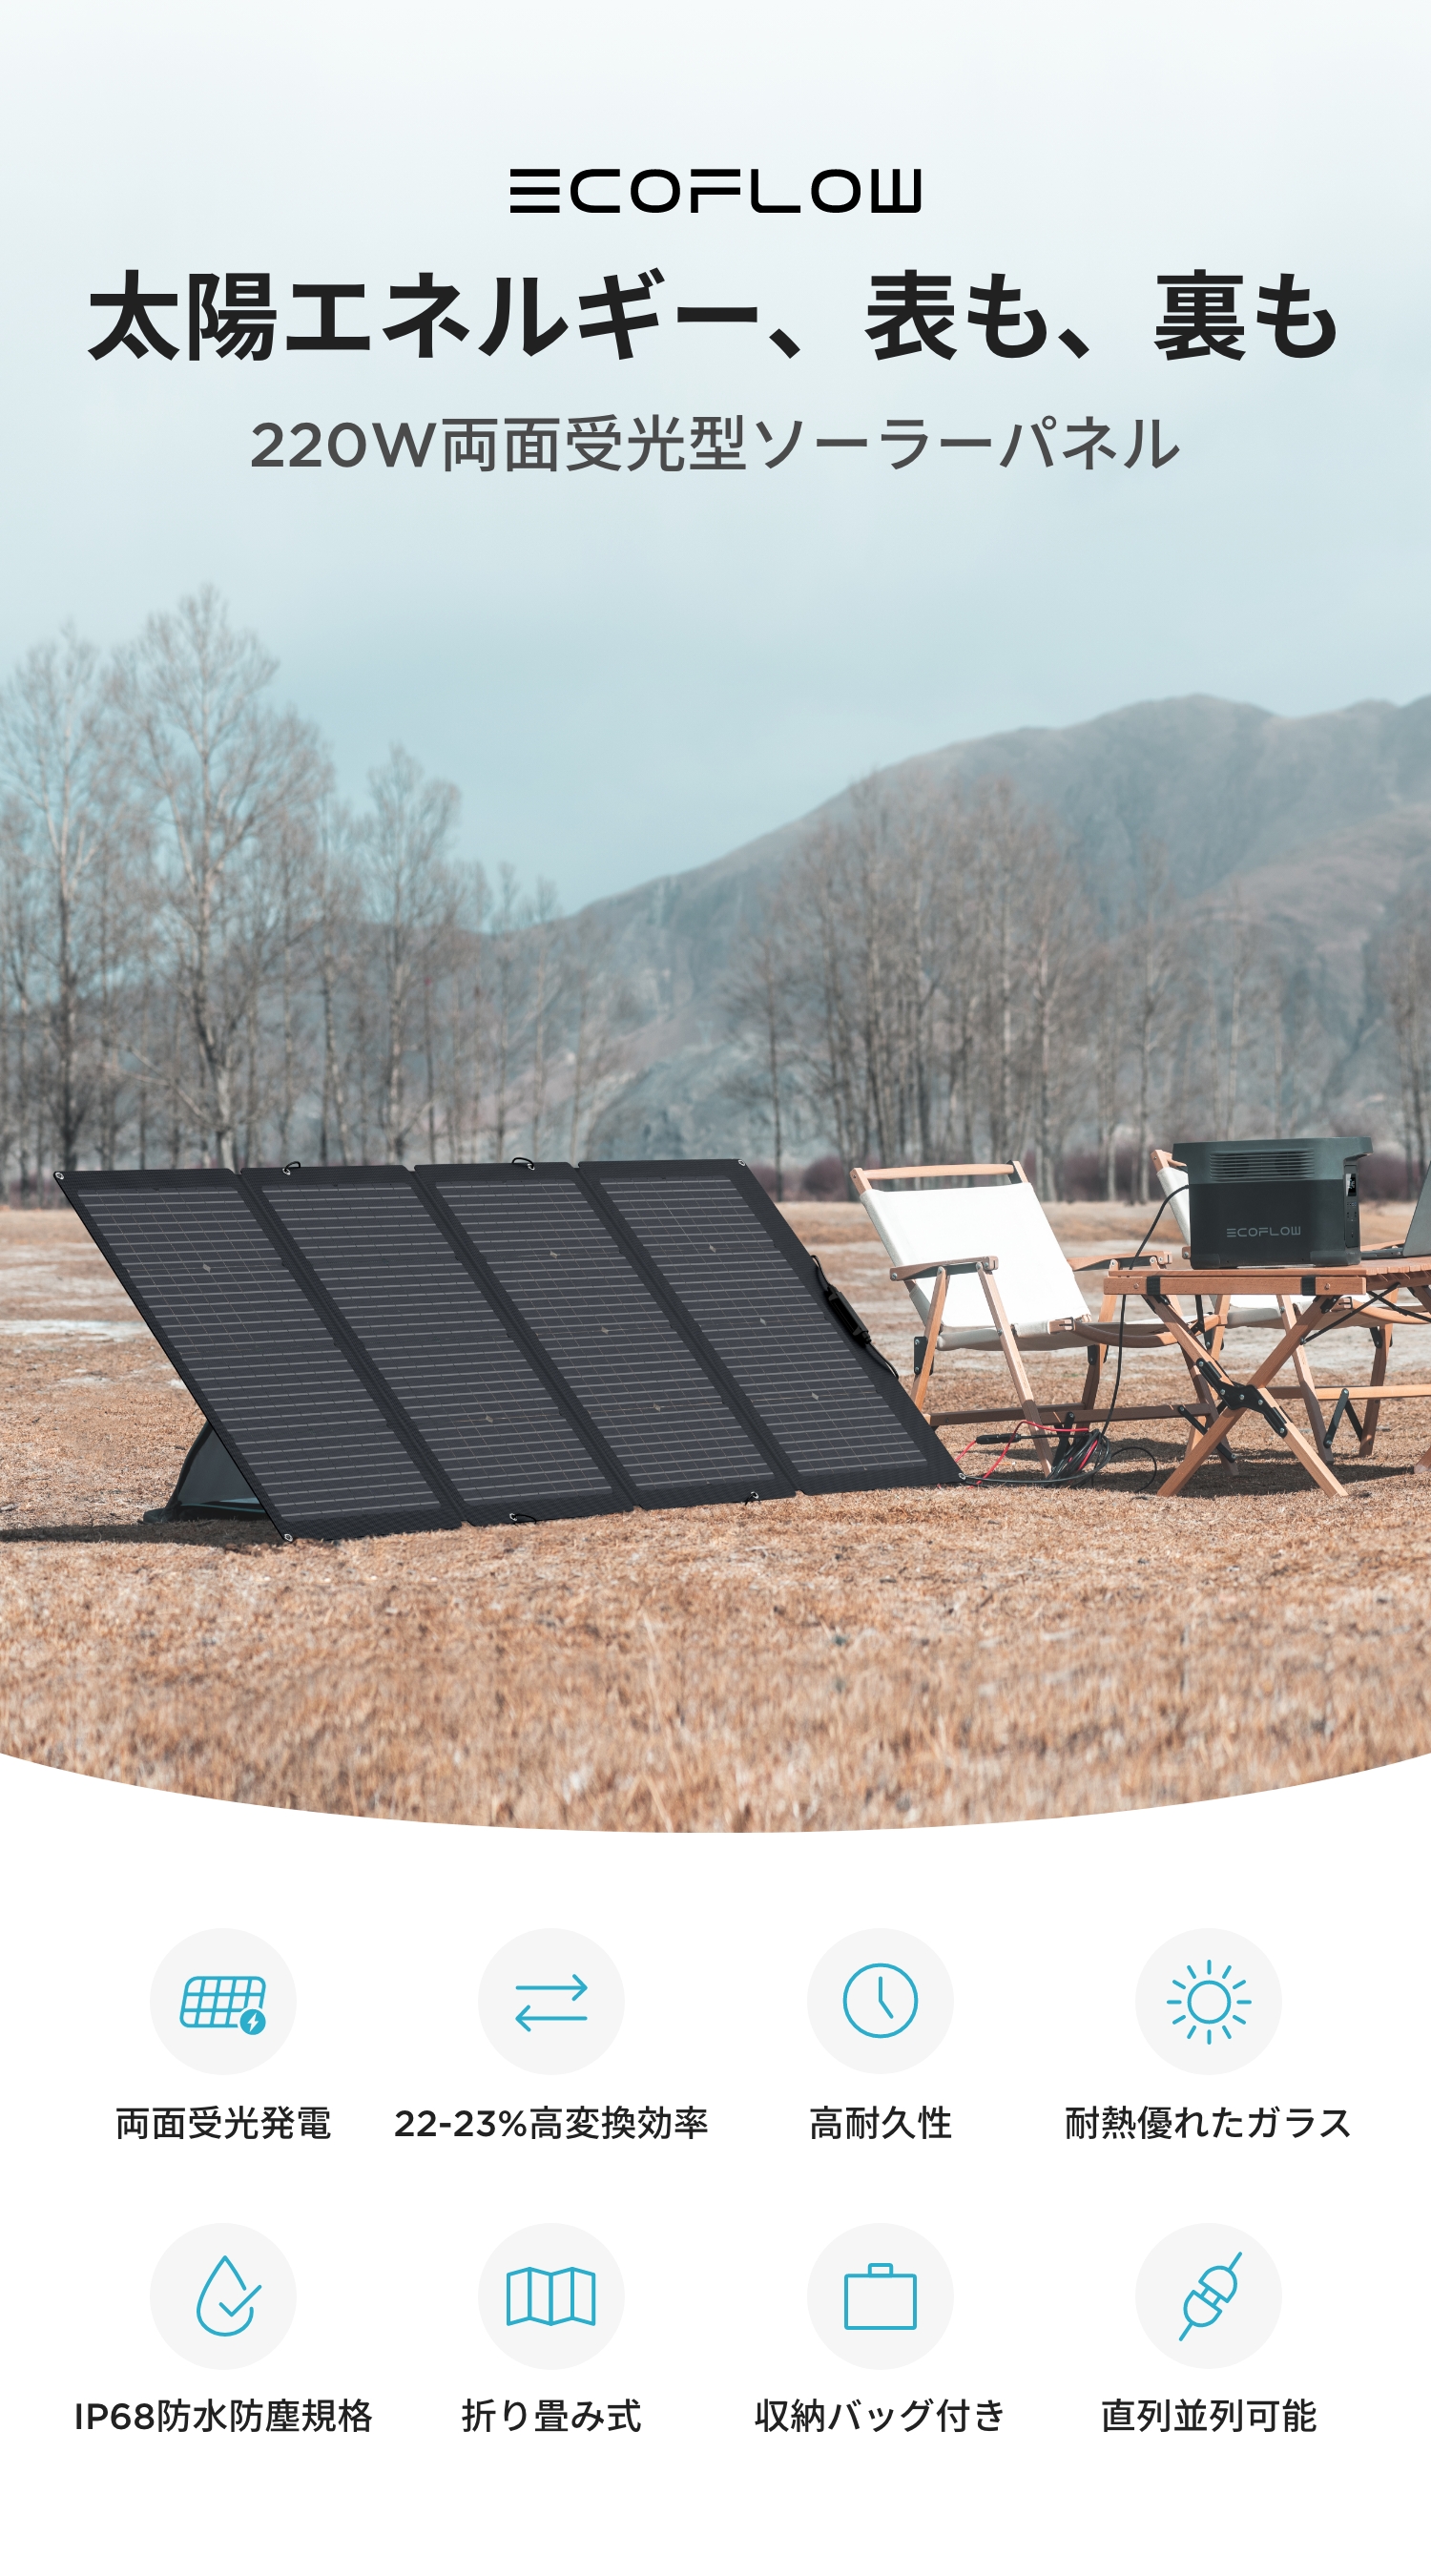 ソーラーパネル 220W 太陽光発電 太陽光パネル ソーラー充電器 ソーラー 車中泊 キャンプ 防災グッズ 節電 折り畳み コンパクト EcoFlow